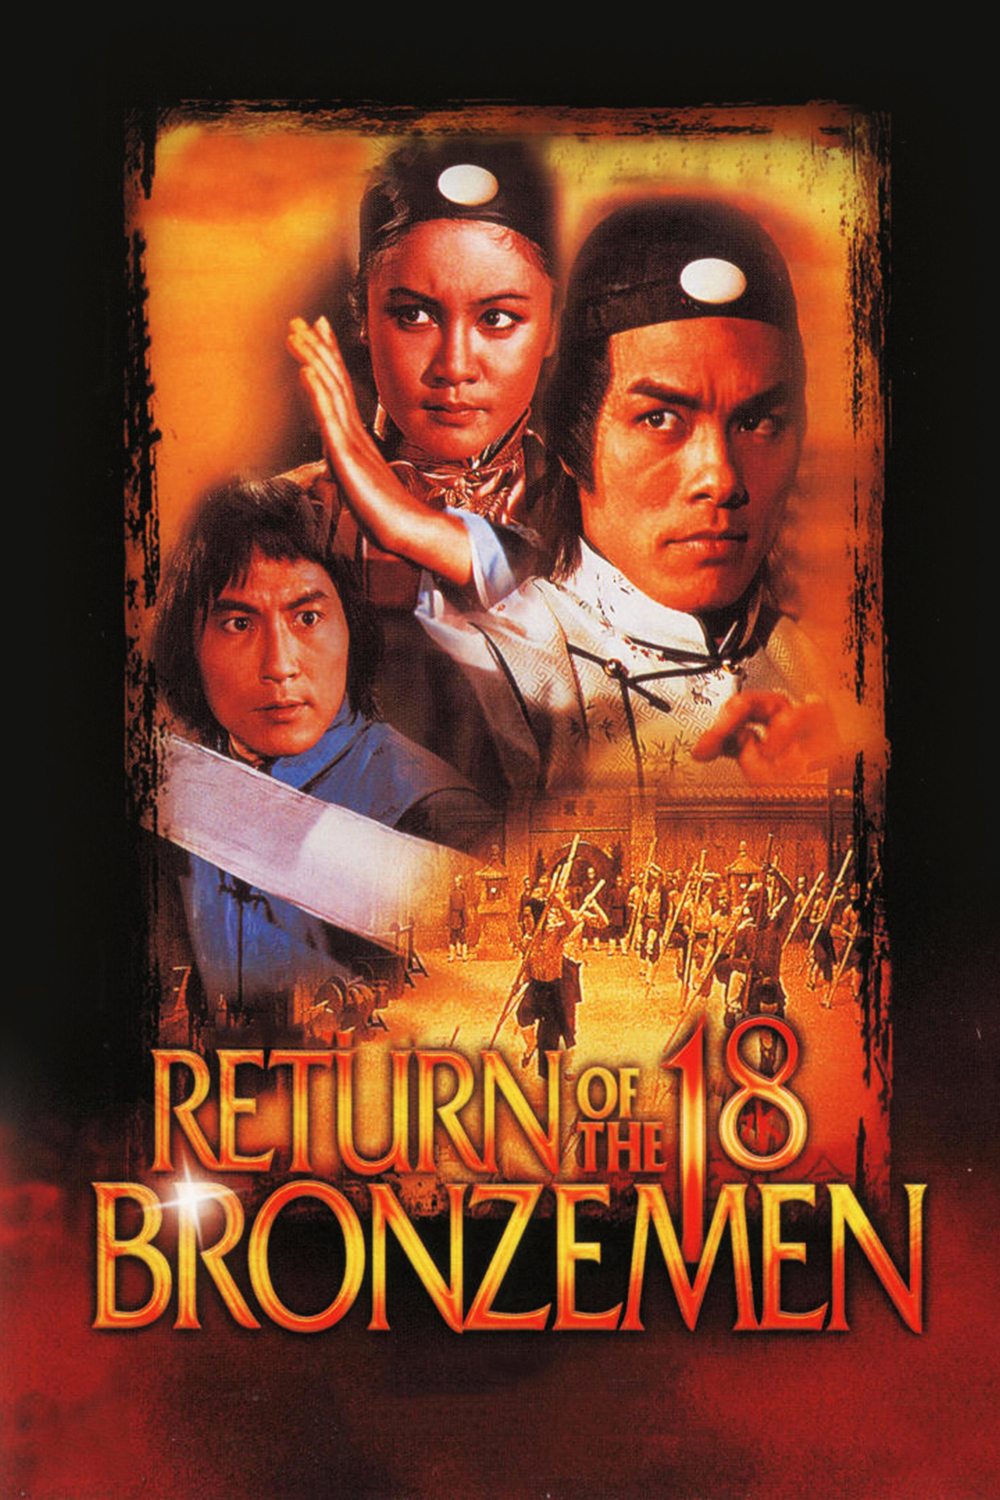 少林寺十八铜人+雍正大破十八铜人 [国语 DIY简繁字幕].The.18.Bronzemen.1976.Return.of.the.18.Bronzemen.1976.GBR.Blu-ray.1080p.AVC.LPCM.1.0-DIY@Hero [45.35GB]-2.jpg